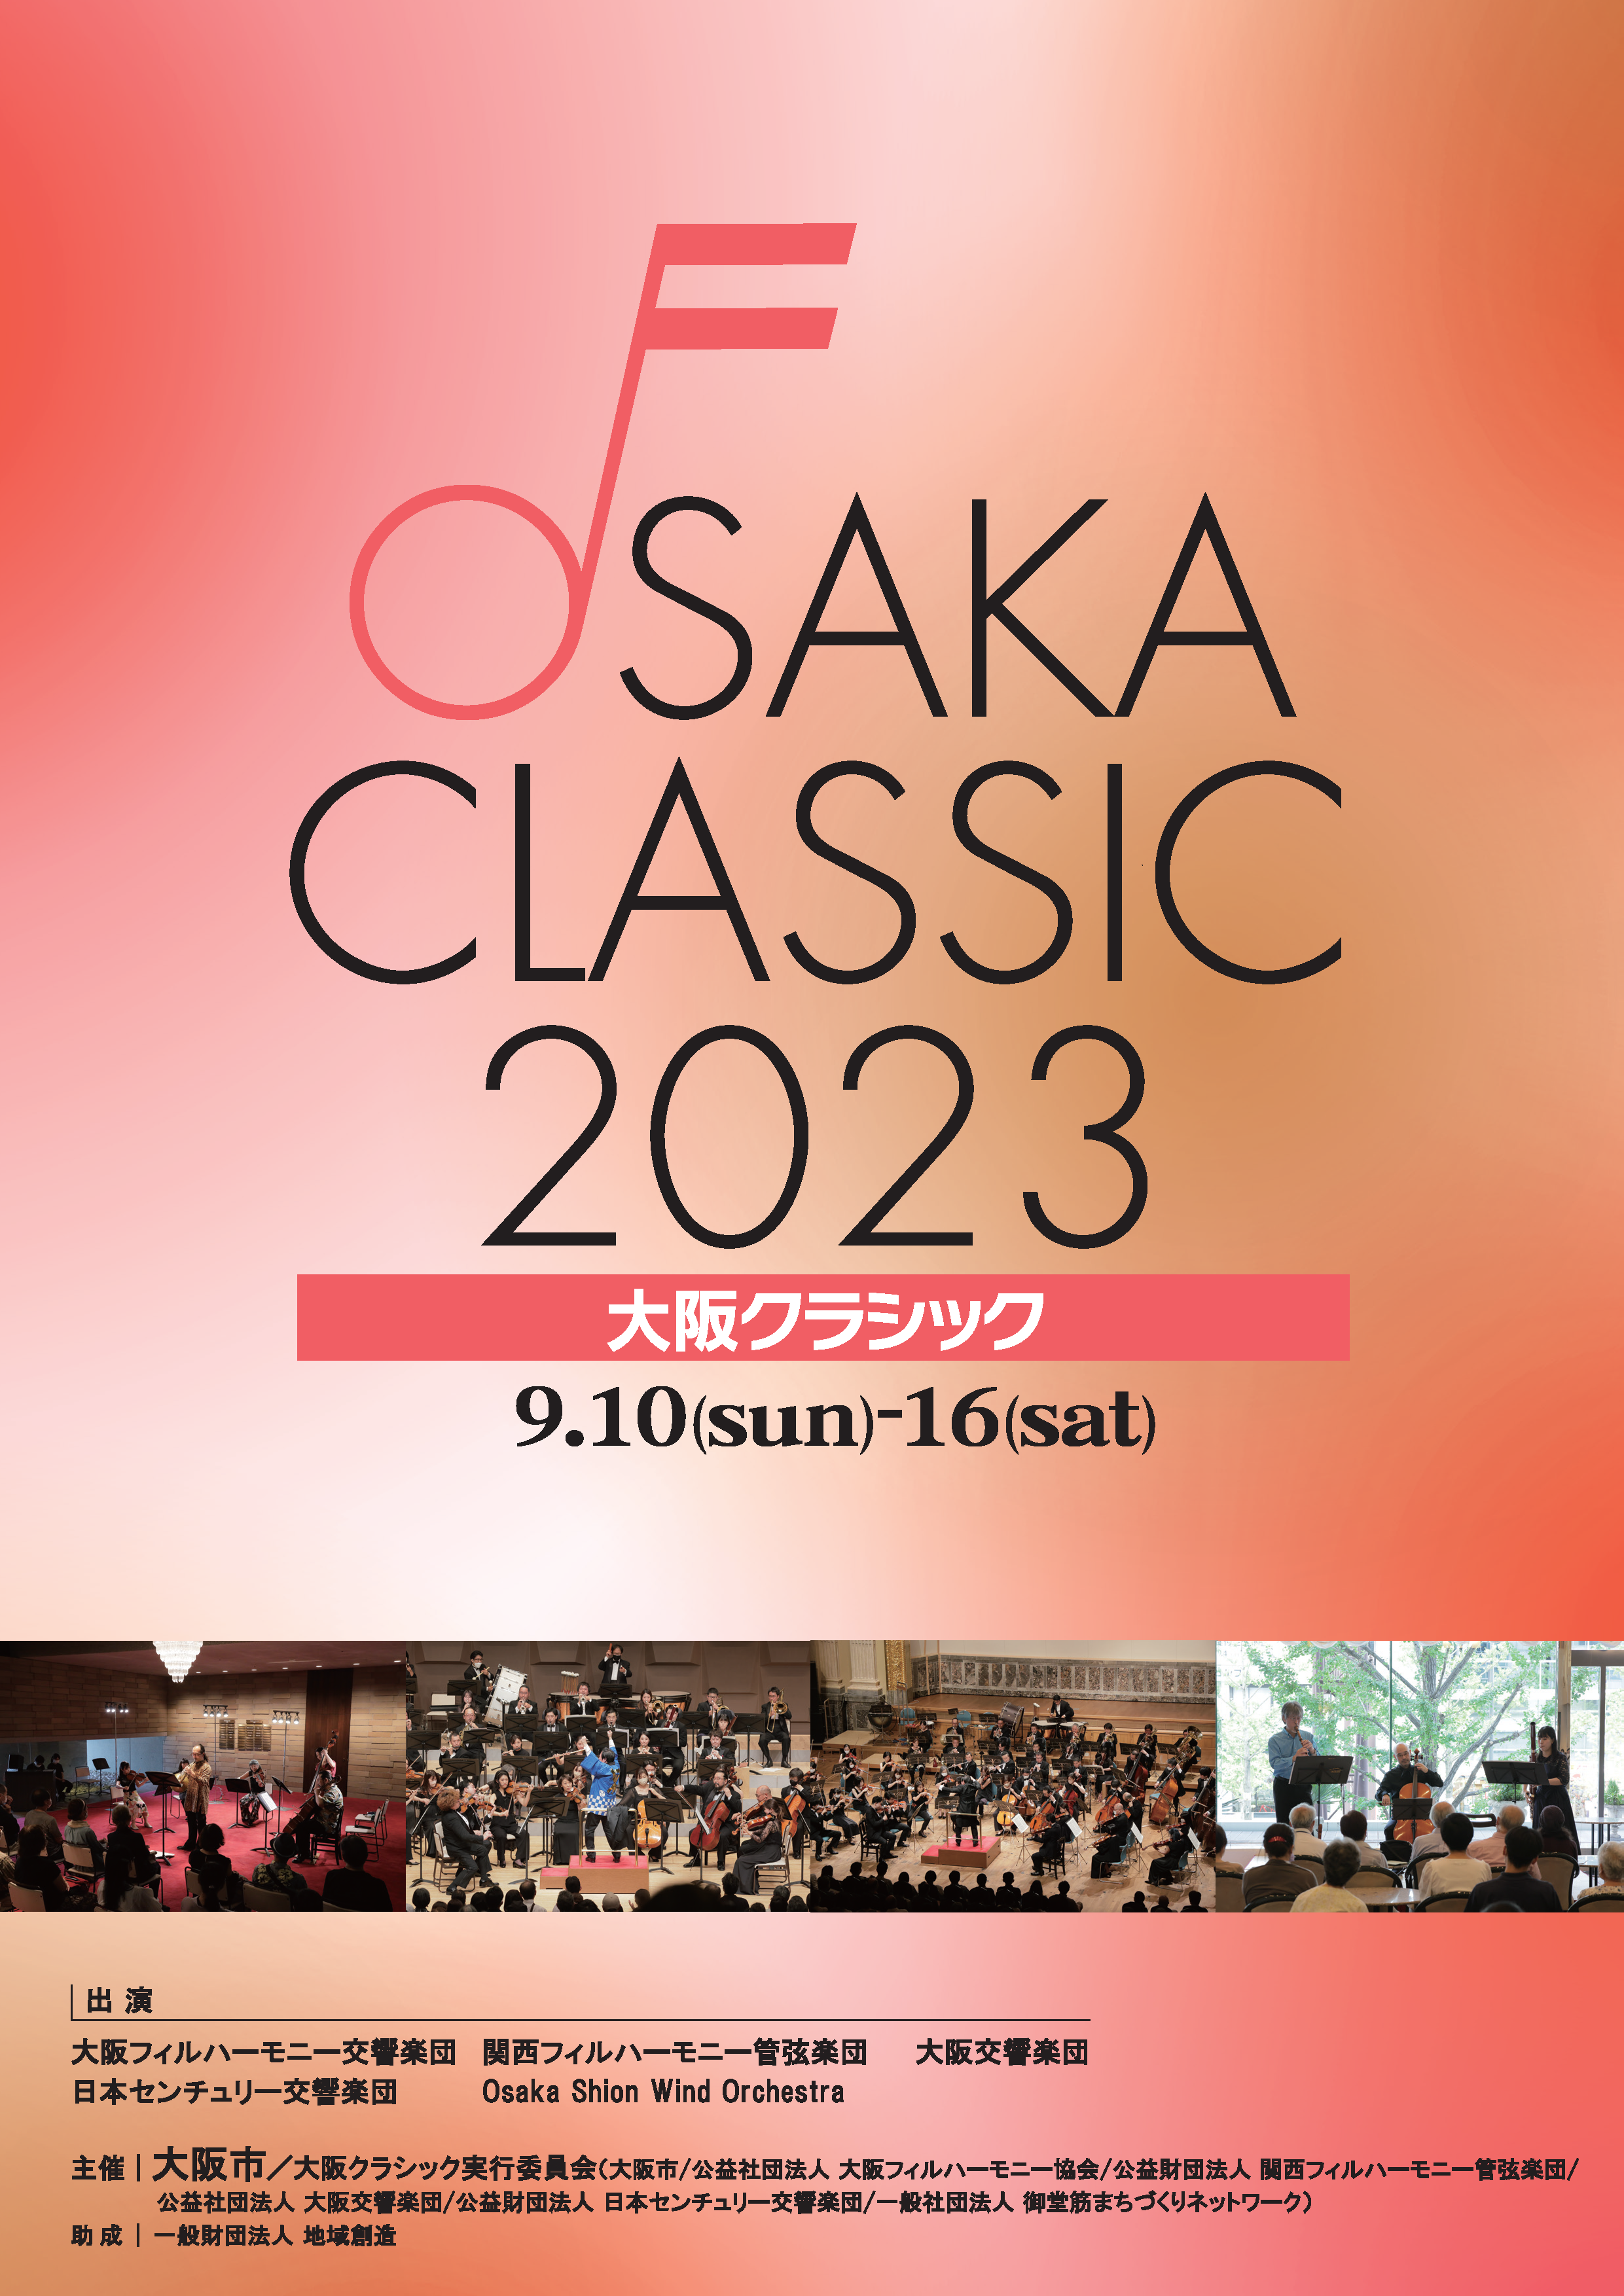 「大阪クラシック2023」開催のお知らせ